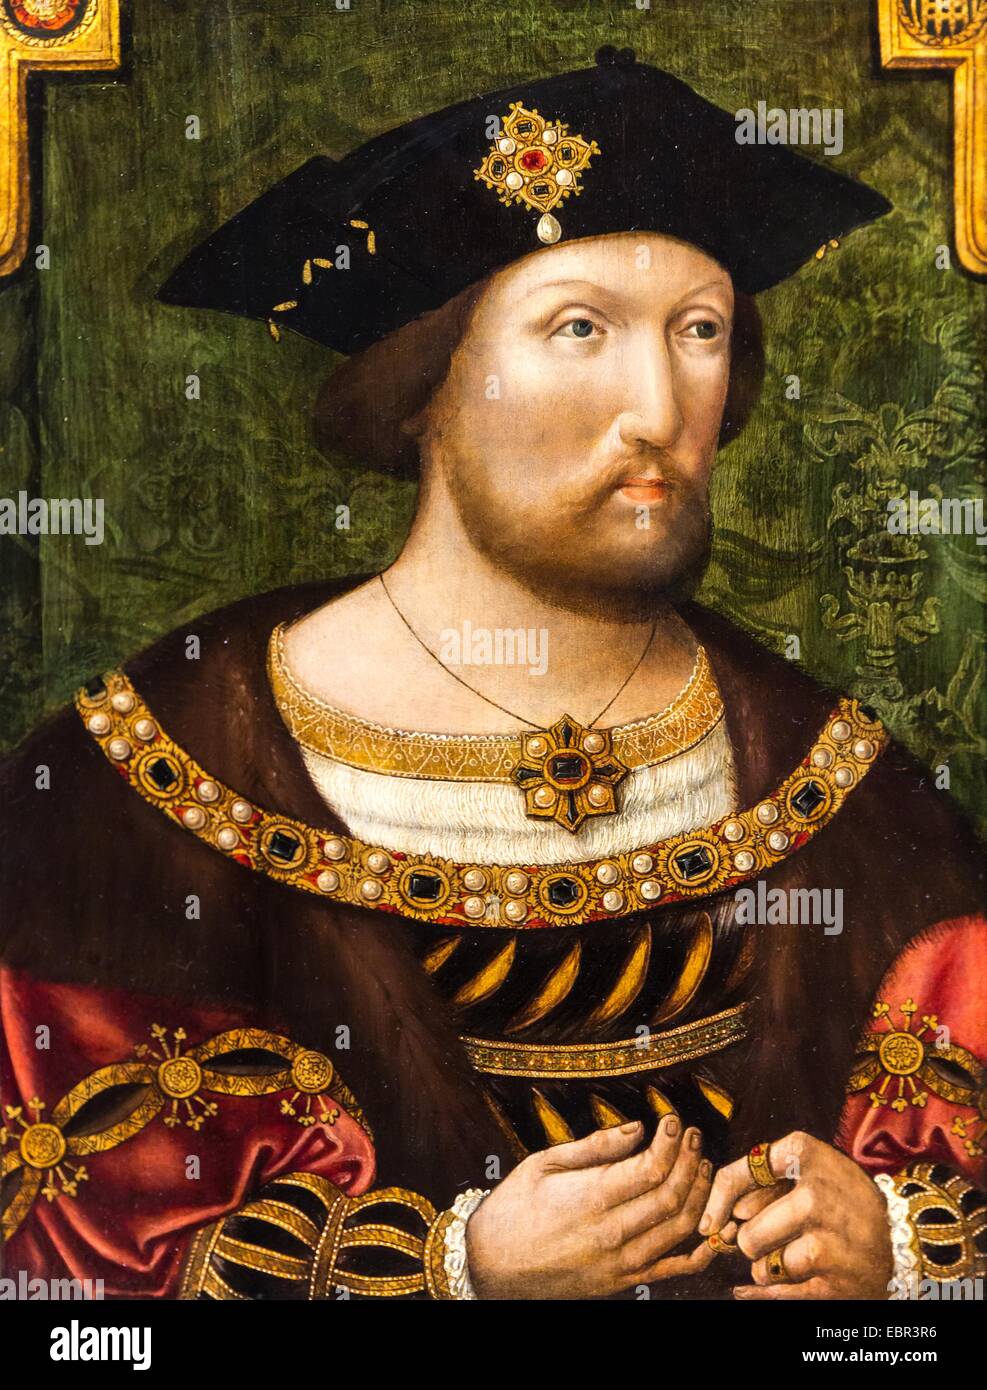 ActiveMuseum_0003629.jpg / König Henry VIII, 1520 - unbekannter Künstler 22.01.2014 - / 16. Jahrhundert Sammlung / aktive Museum Stockfoto